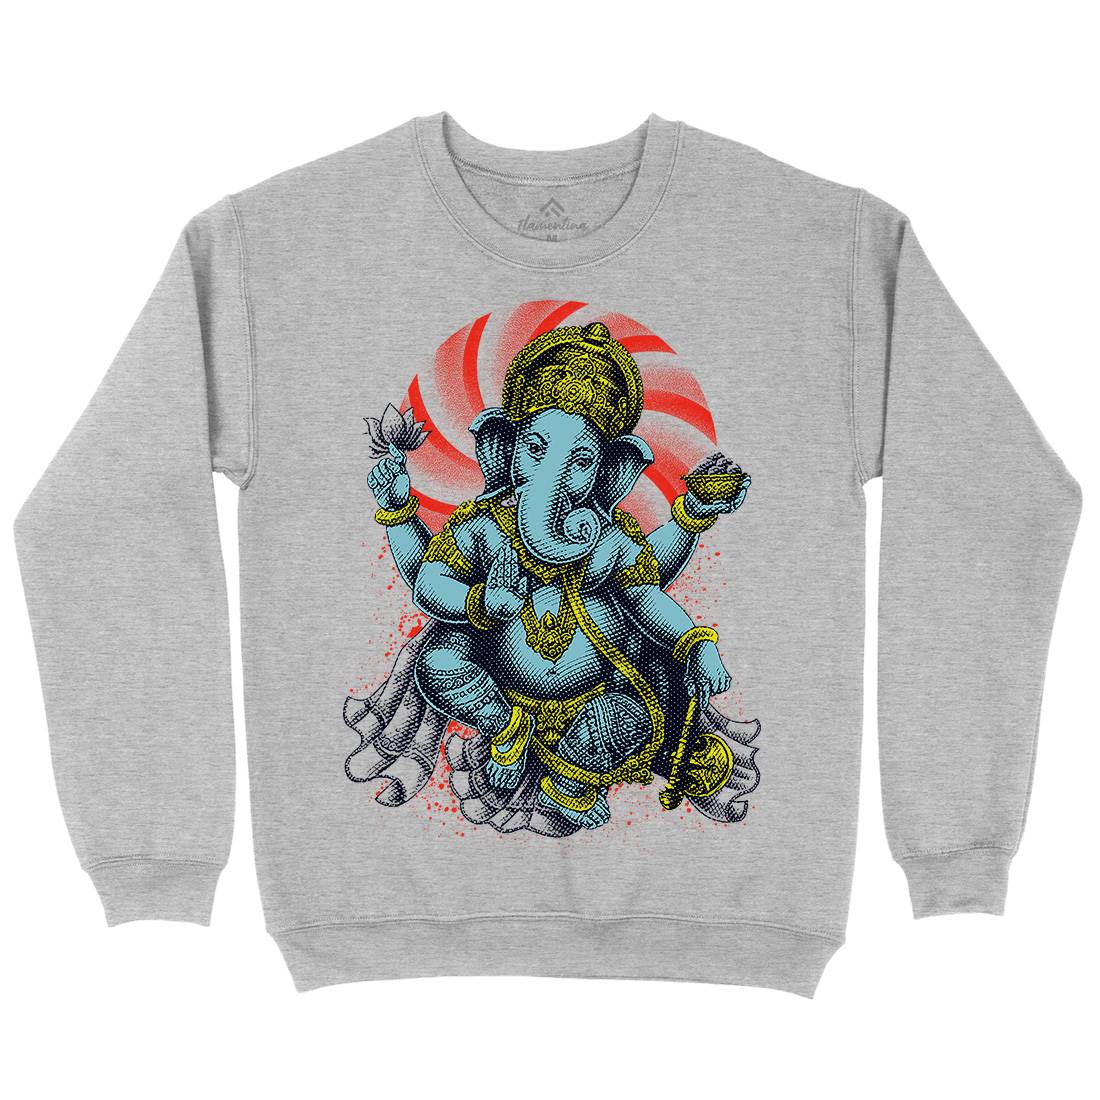 Hindu Goddess Kids Crew Neck Sweatshirt Asian D043